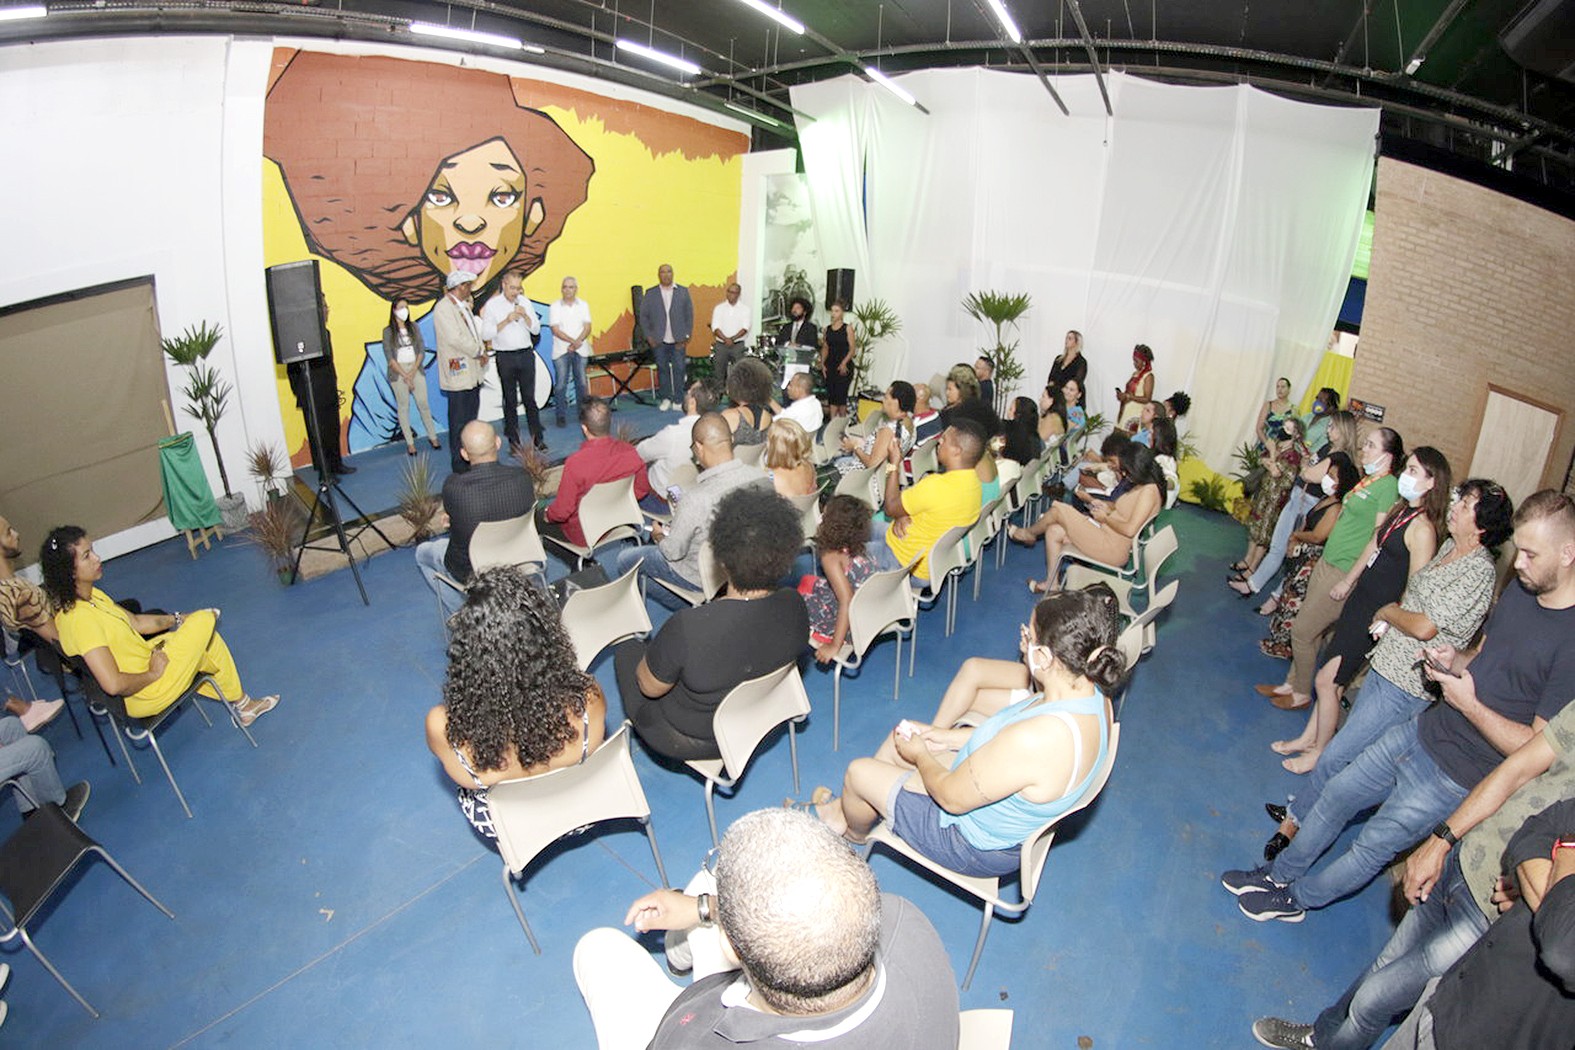 Espaço Afroempresarial realiza palestras para incrementar negócios nesta semana